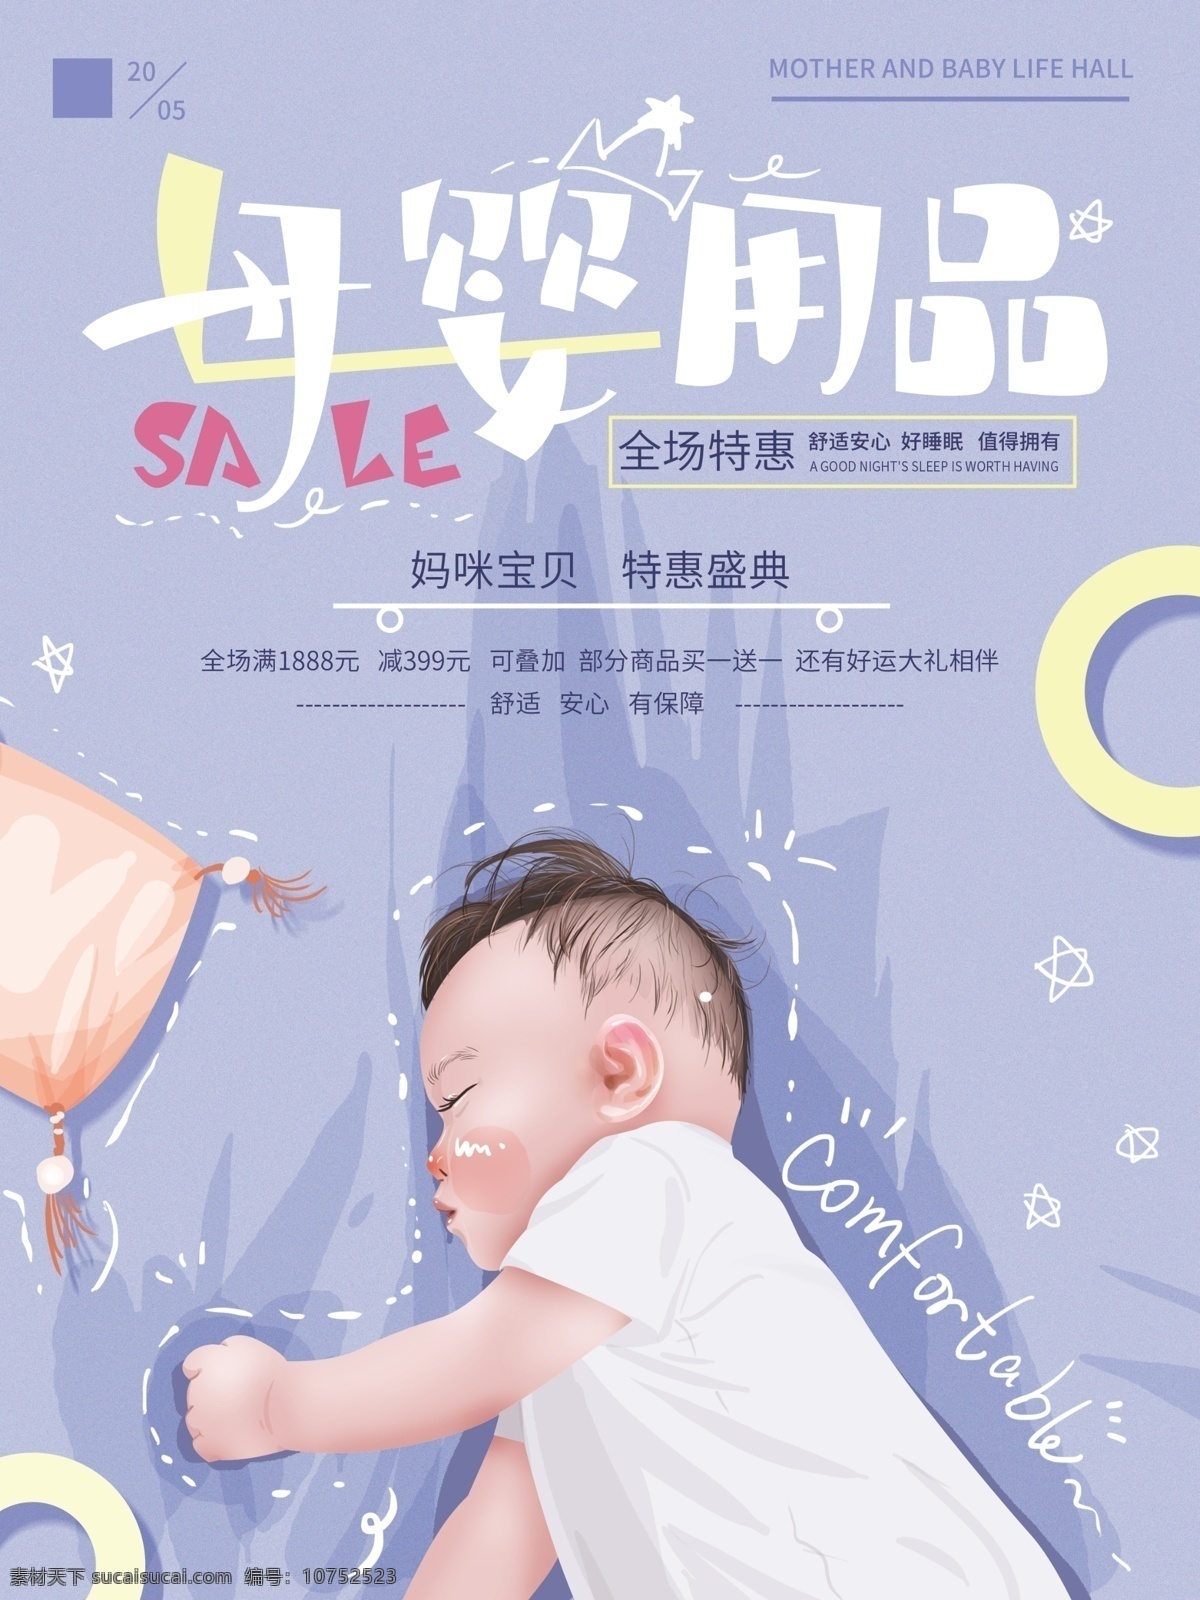 原创 手绘 温馨 母婴 用品 促销 海报 紫色 清新 简约 字体